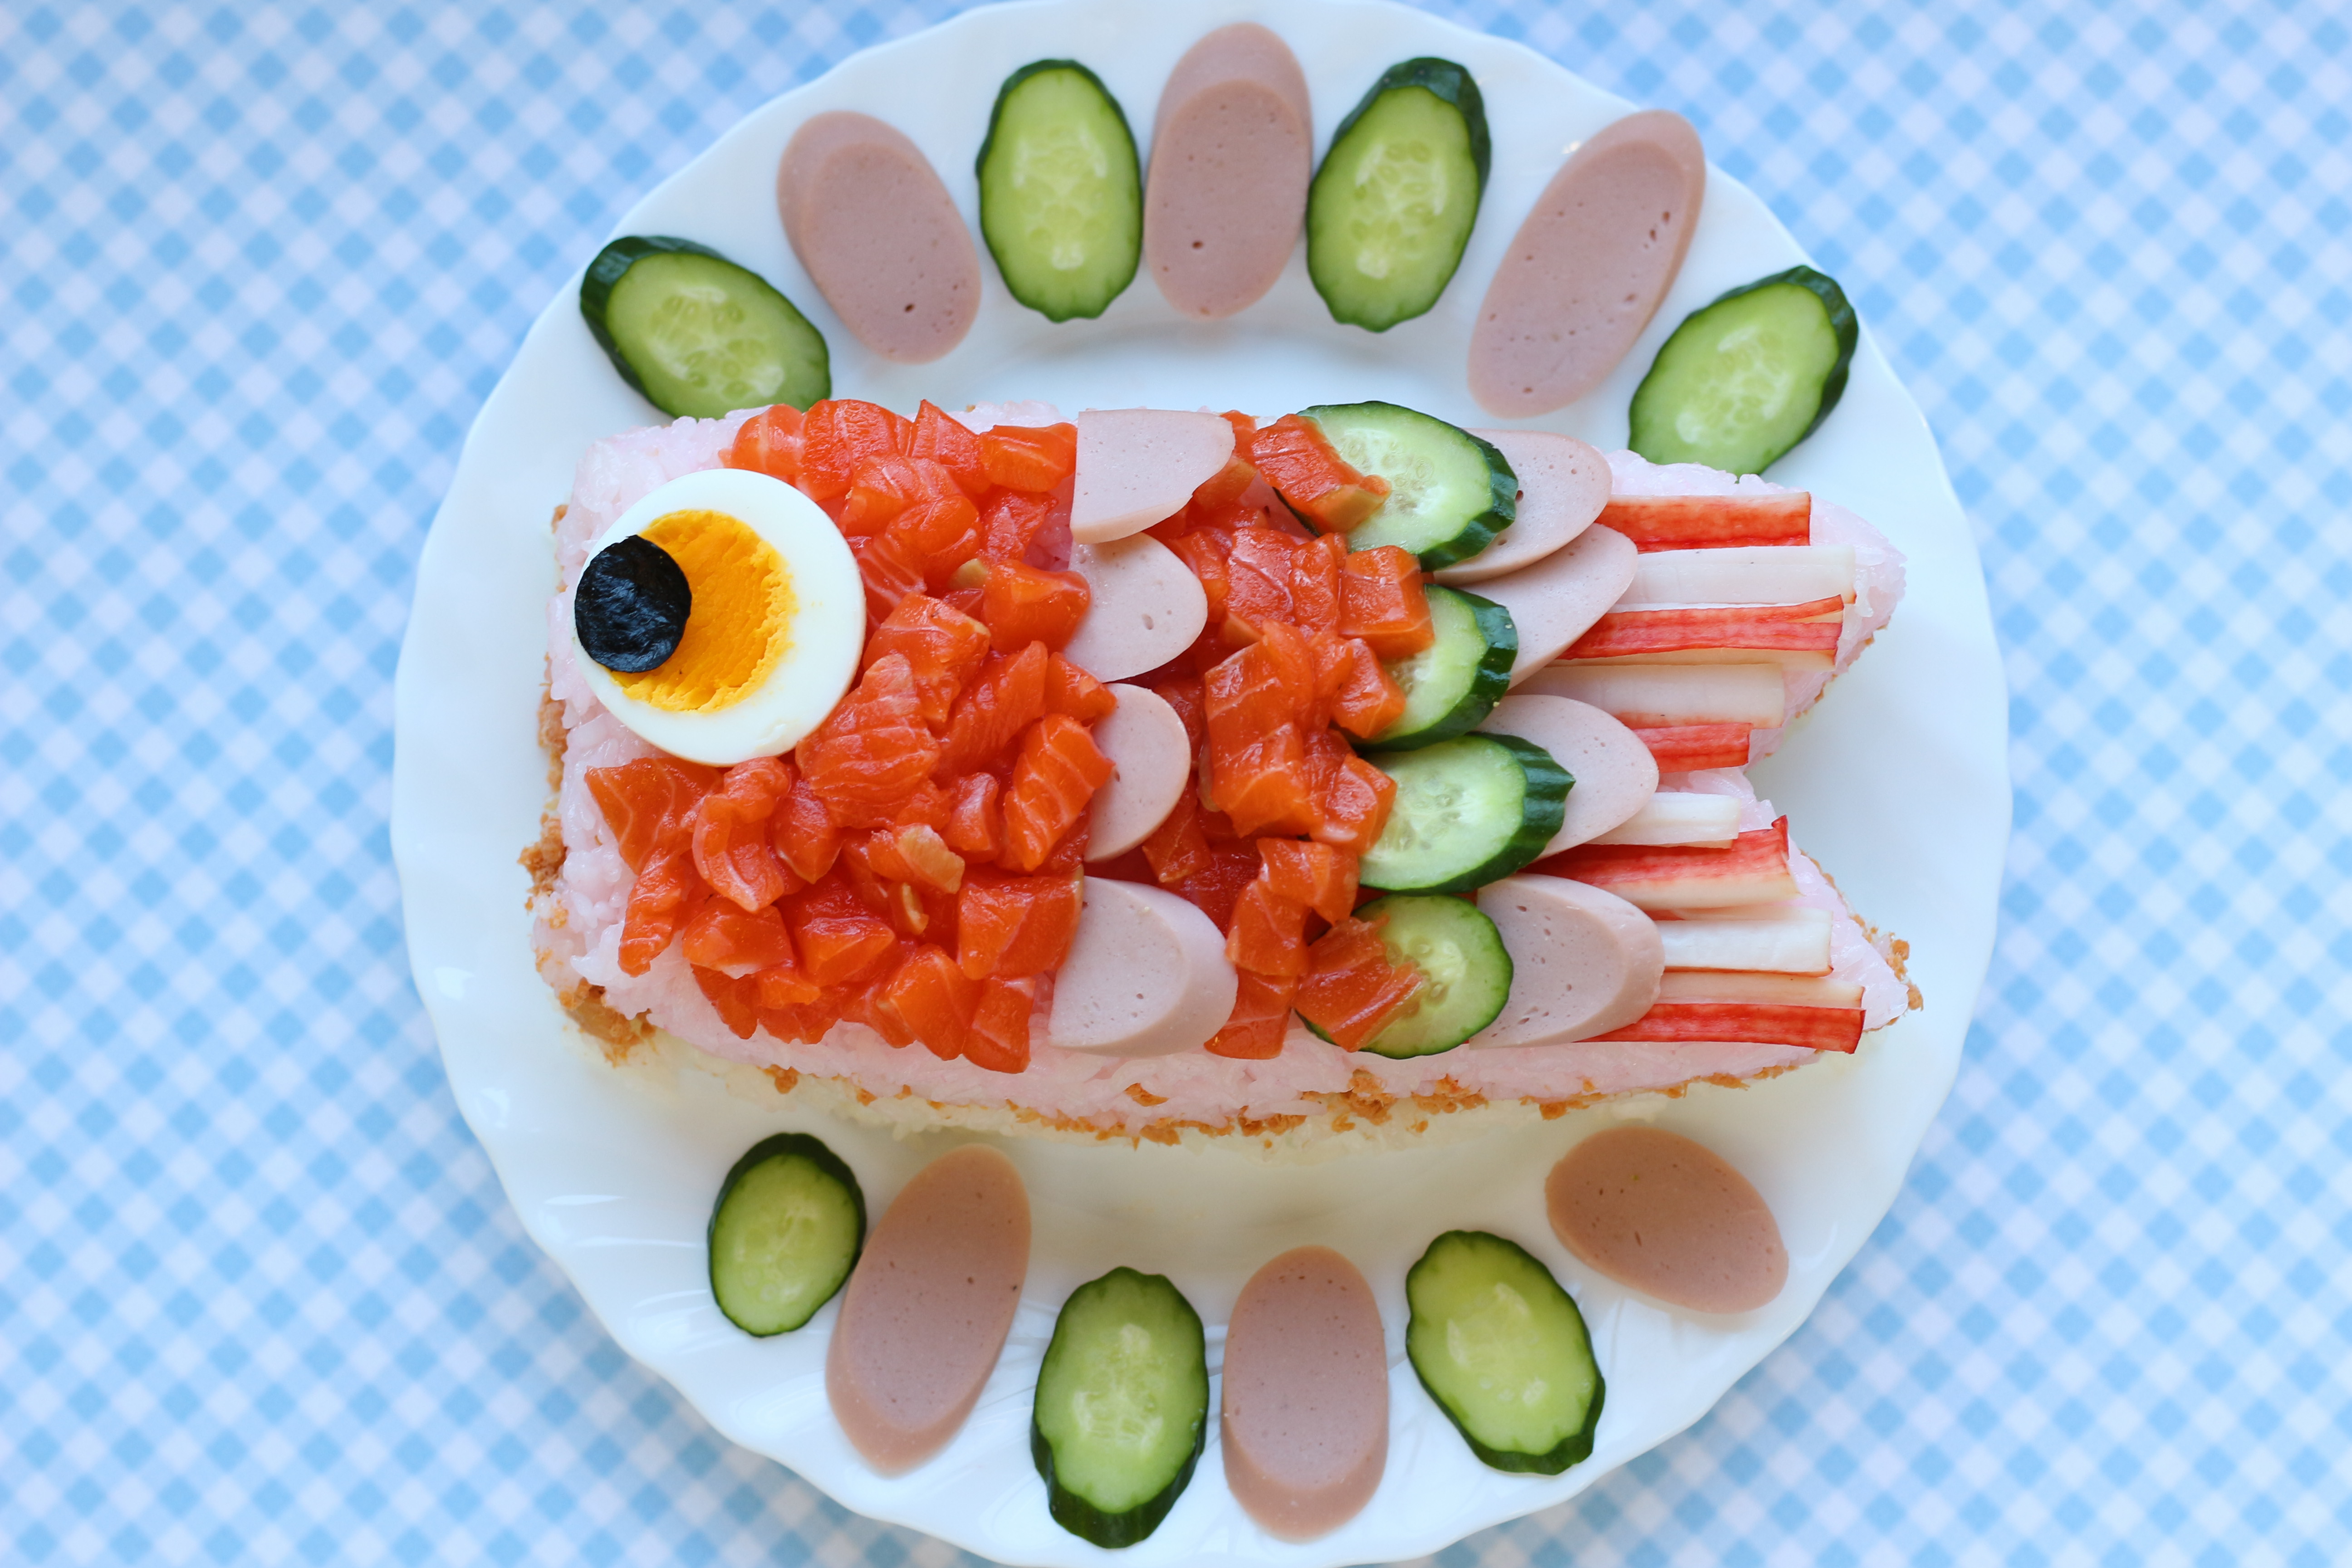 「こいのぼり寿司」料理写真